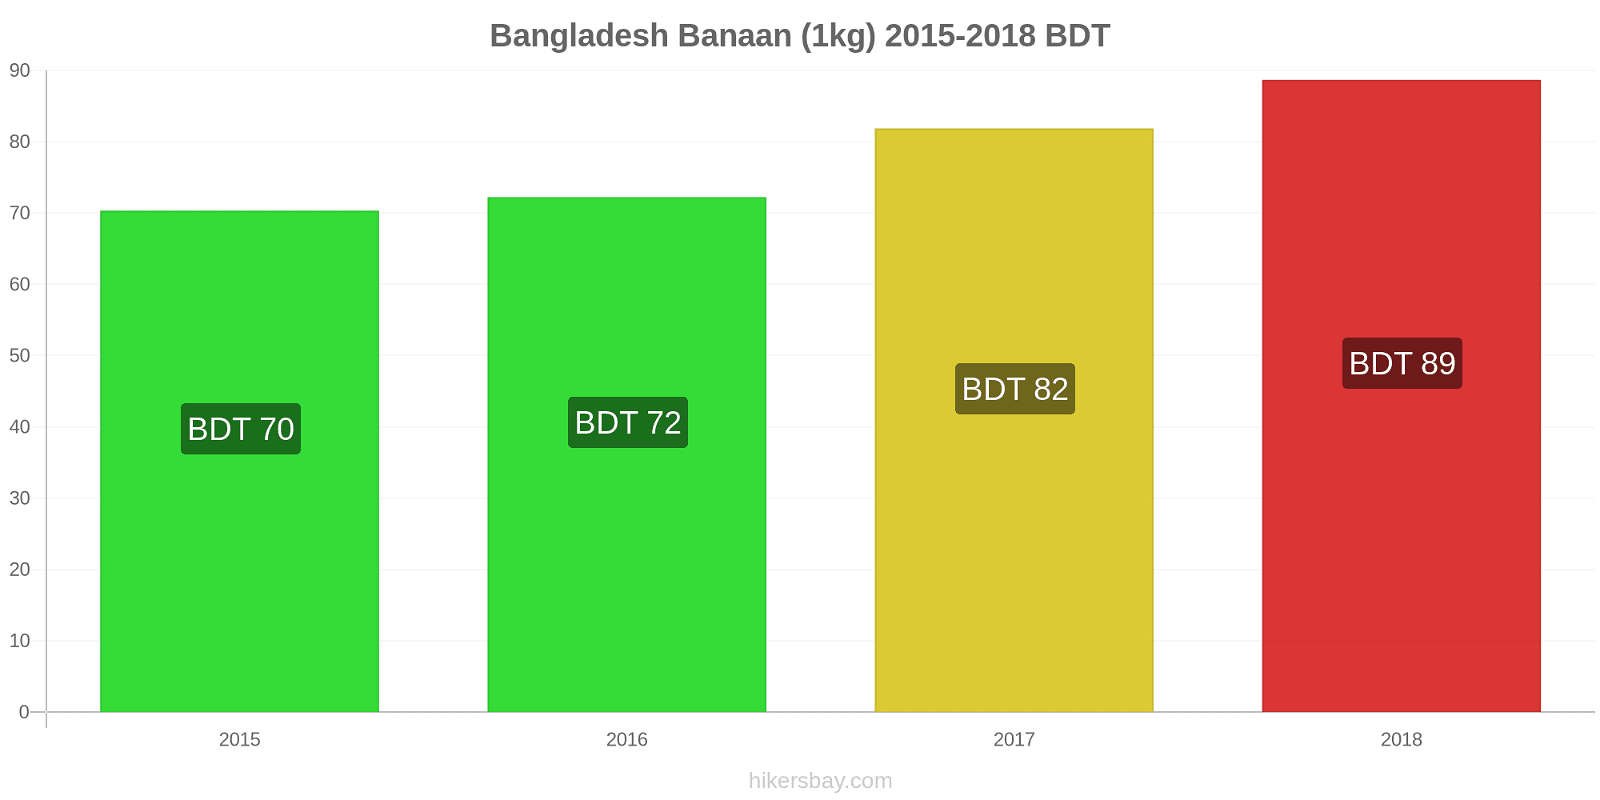 Bangladesh prijswijzigingen Bananen (1kg) hikersbay.com